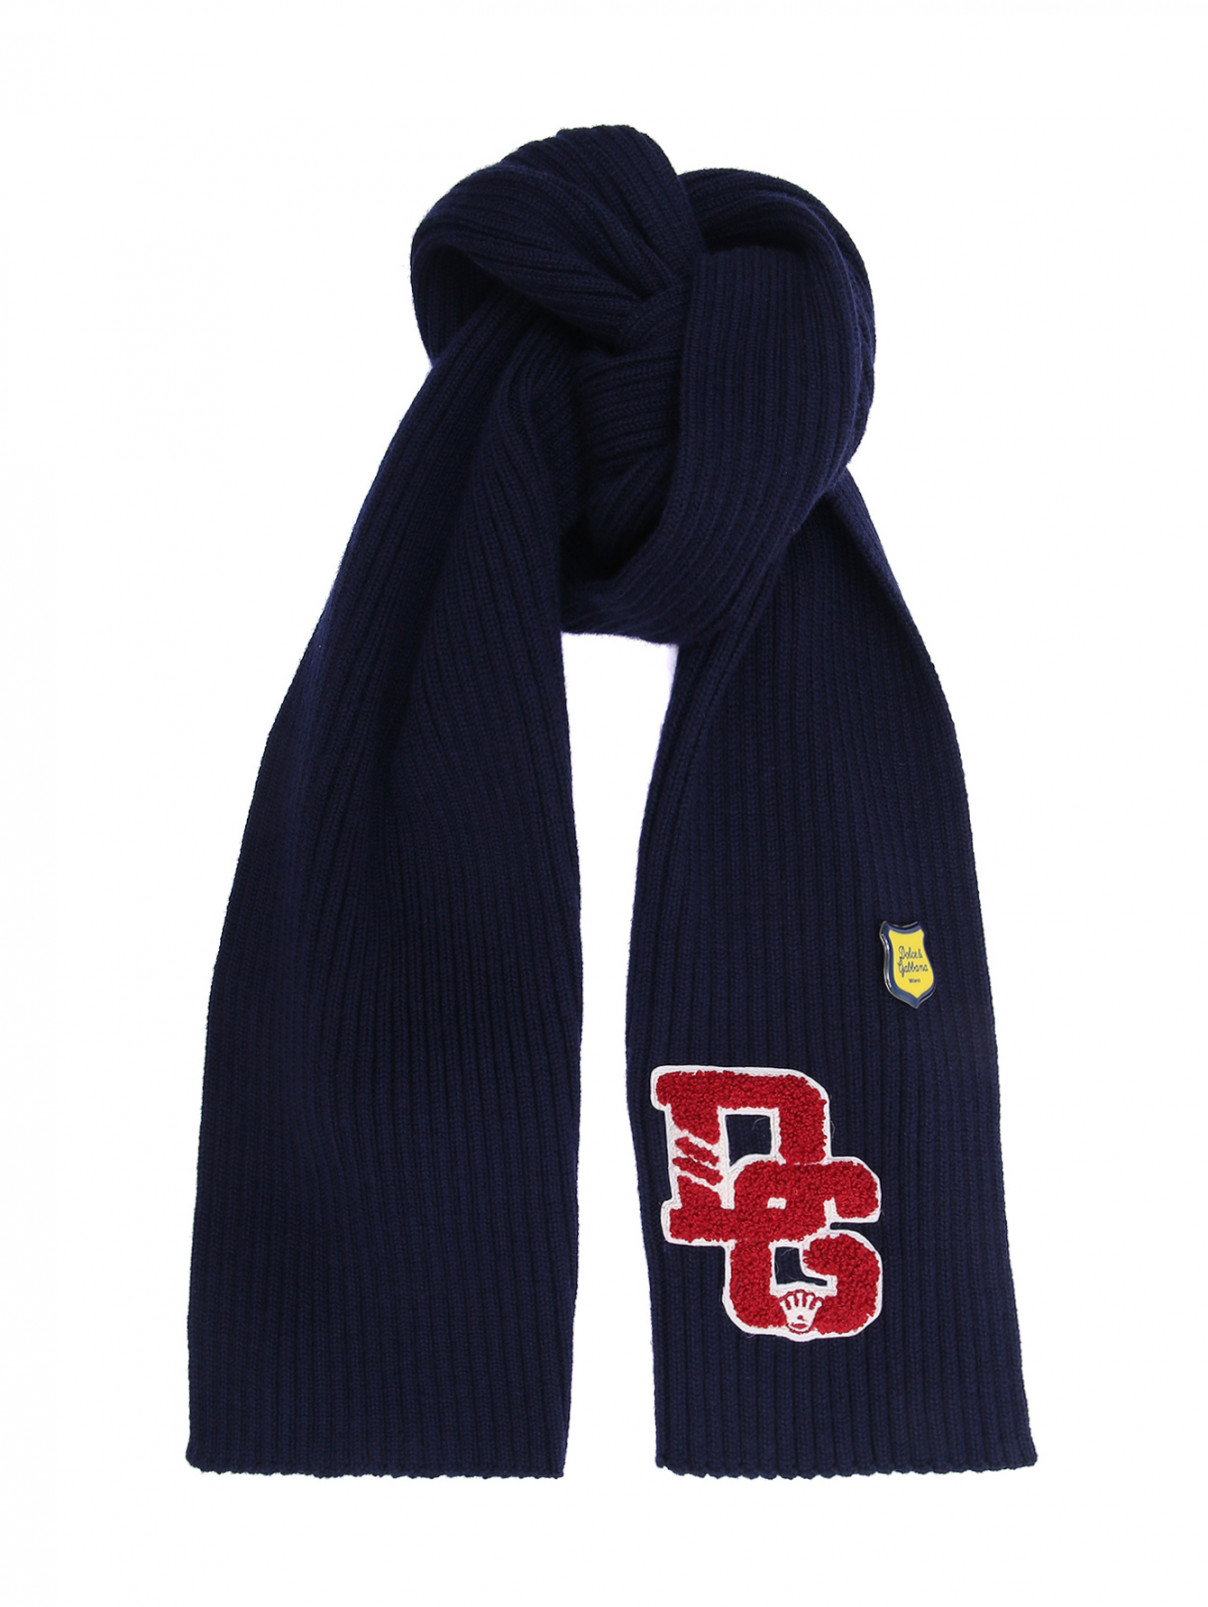 Шерстяной шарф с аппликациями Dolce & Gabbana  –  Общий вид  – Цвет:  Синий